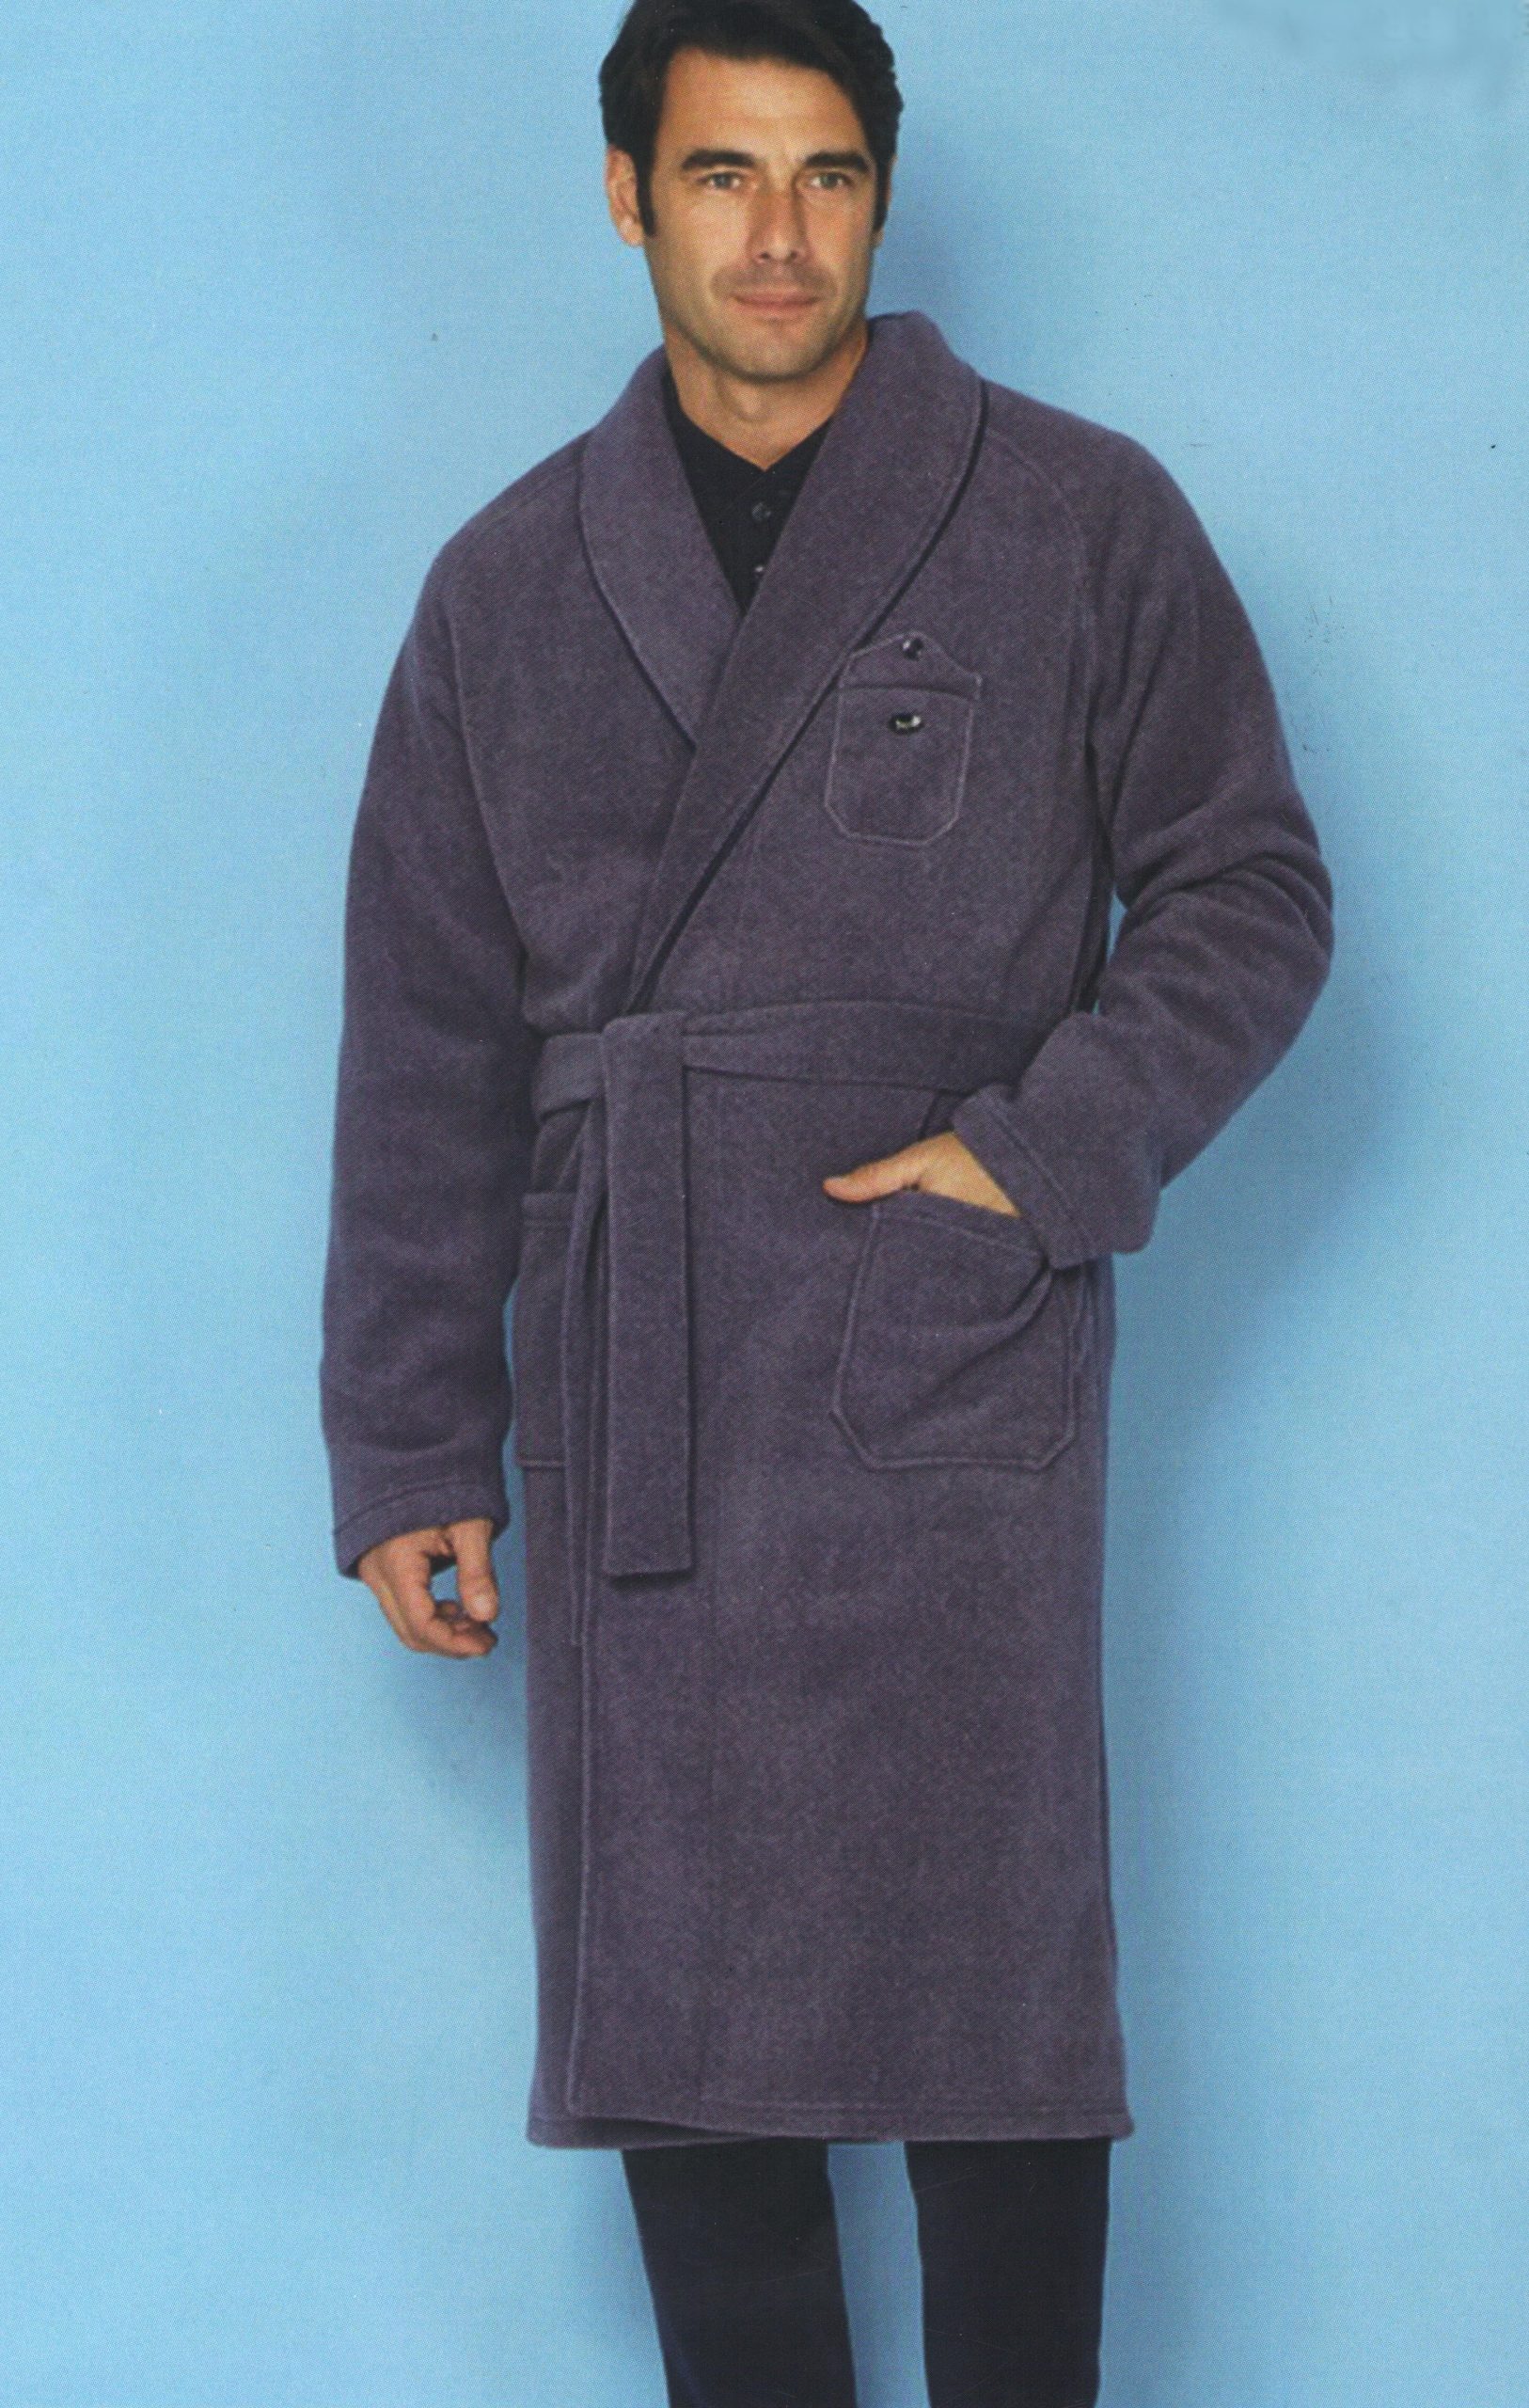 Vestaglia uomo invernale sciallata pile viscosa - Viscose fleece